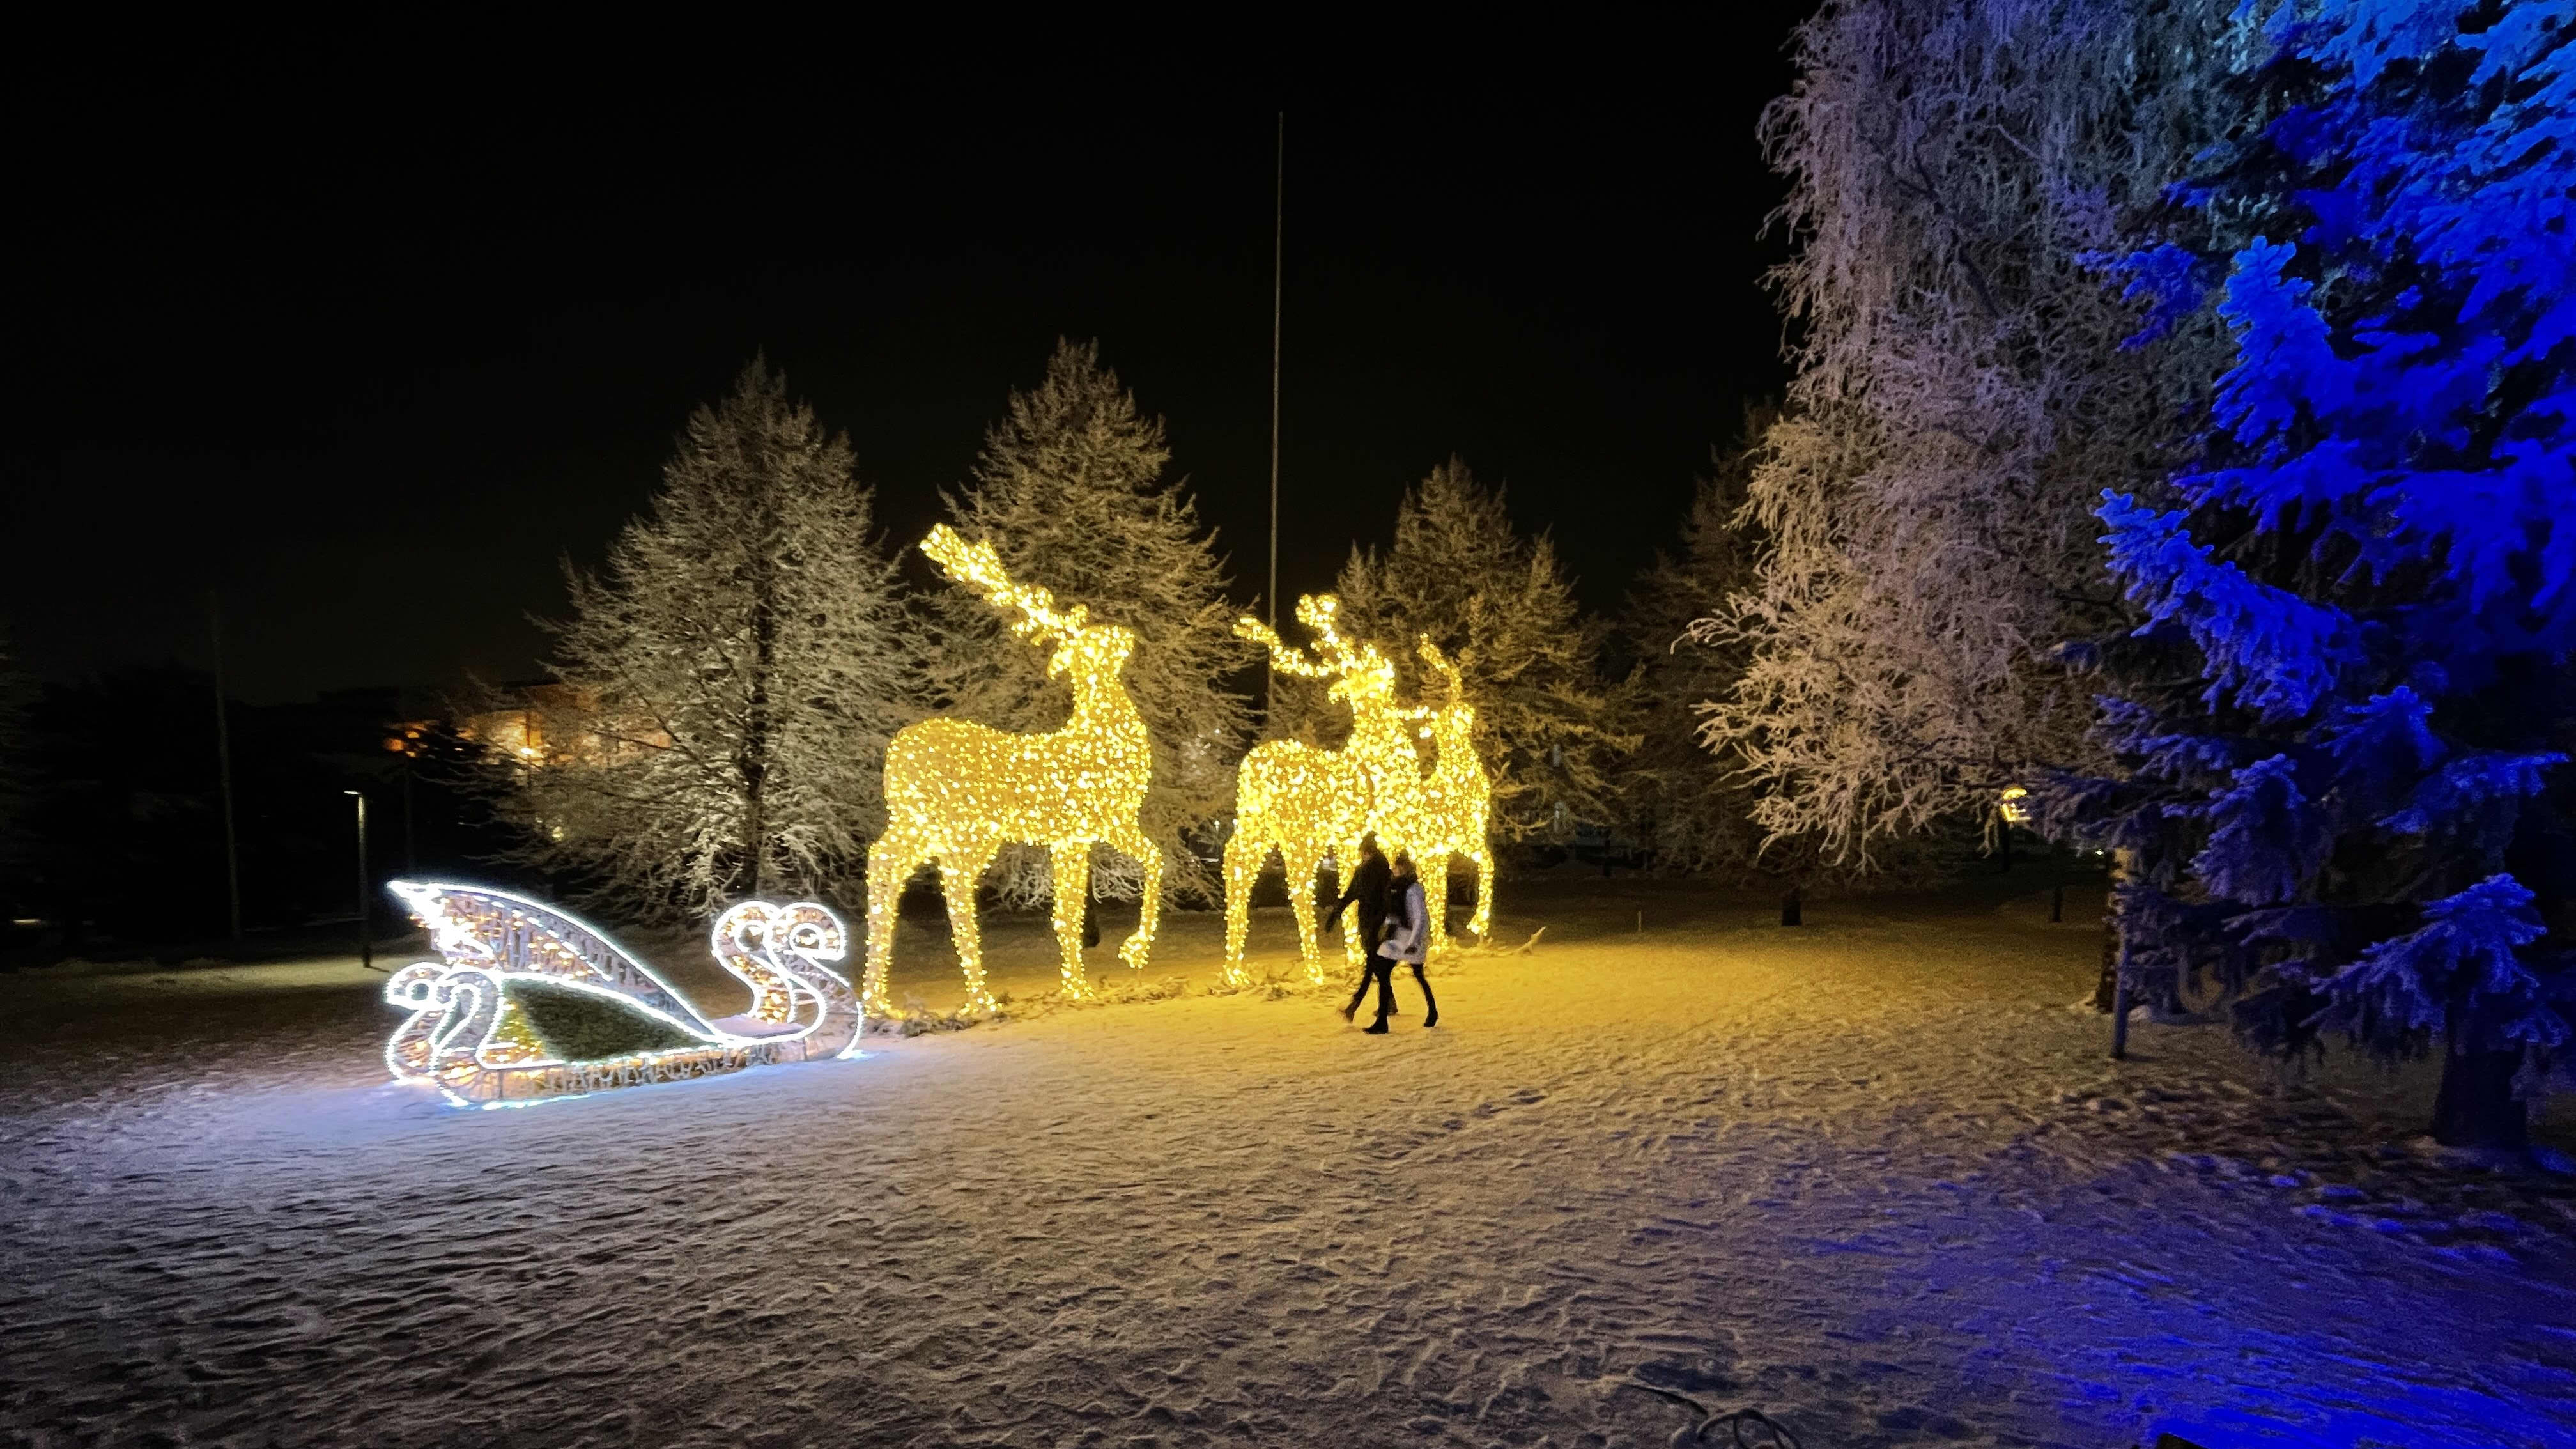 Jouluvalomaa laajenee kaupungintalon julkisivuun Valon kaupunki ilahduttaa jyväskyläläisiä jouluisella tarinalla, joka projisoidaan kaupungintalon pääjulkisivulle.